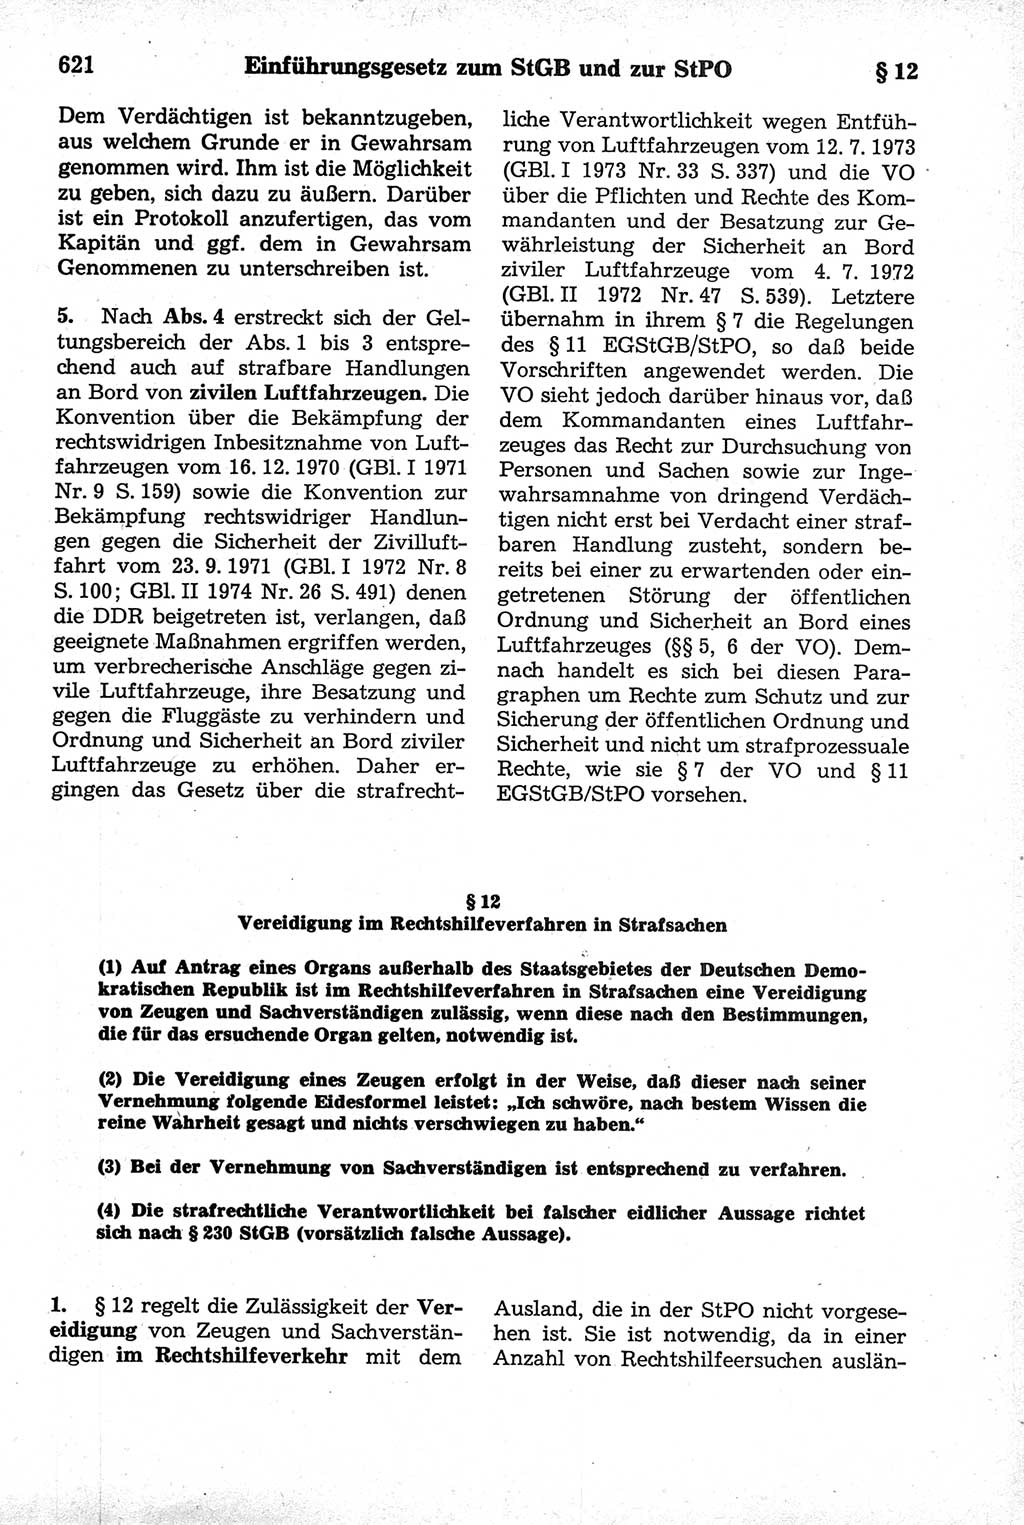 Strafrecht der Deutschen Demokratischen Republik (DDR), Kommentar zum Strafgesetzbuch (StGB) 1981, Seite 621 (Strafr. DDR Komm. StGB 1981, S. 621)